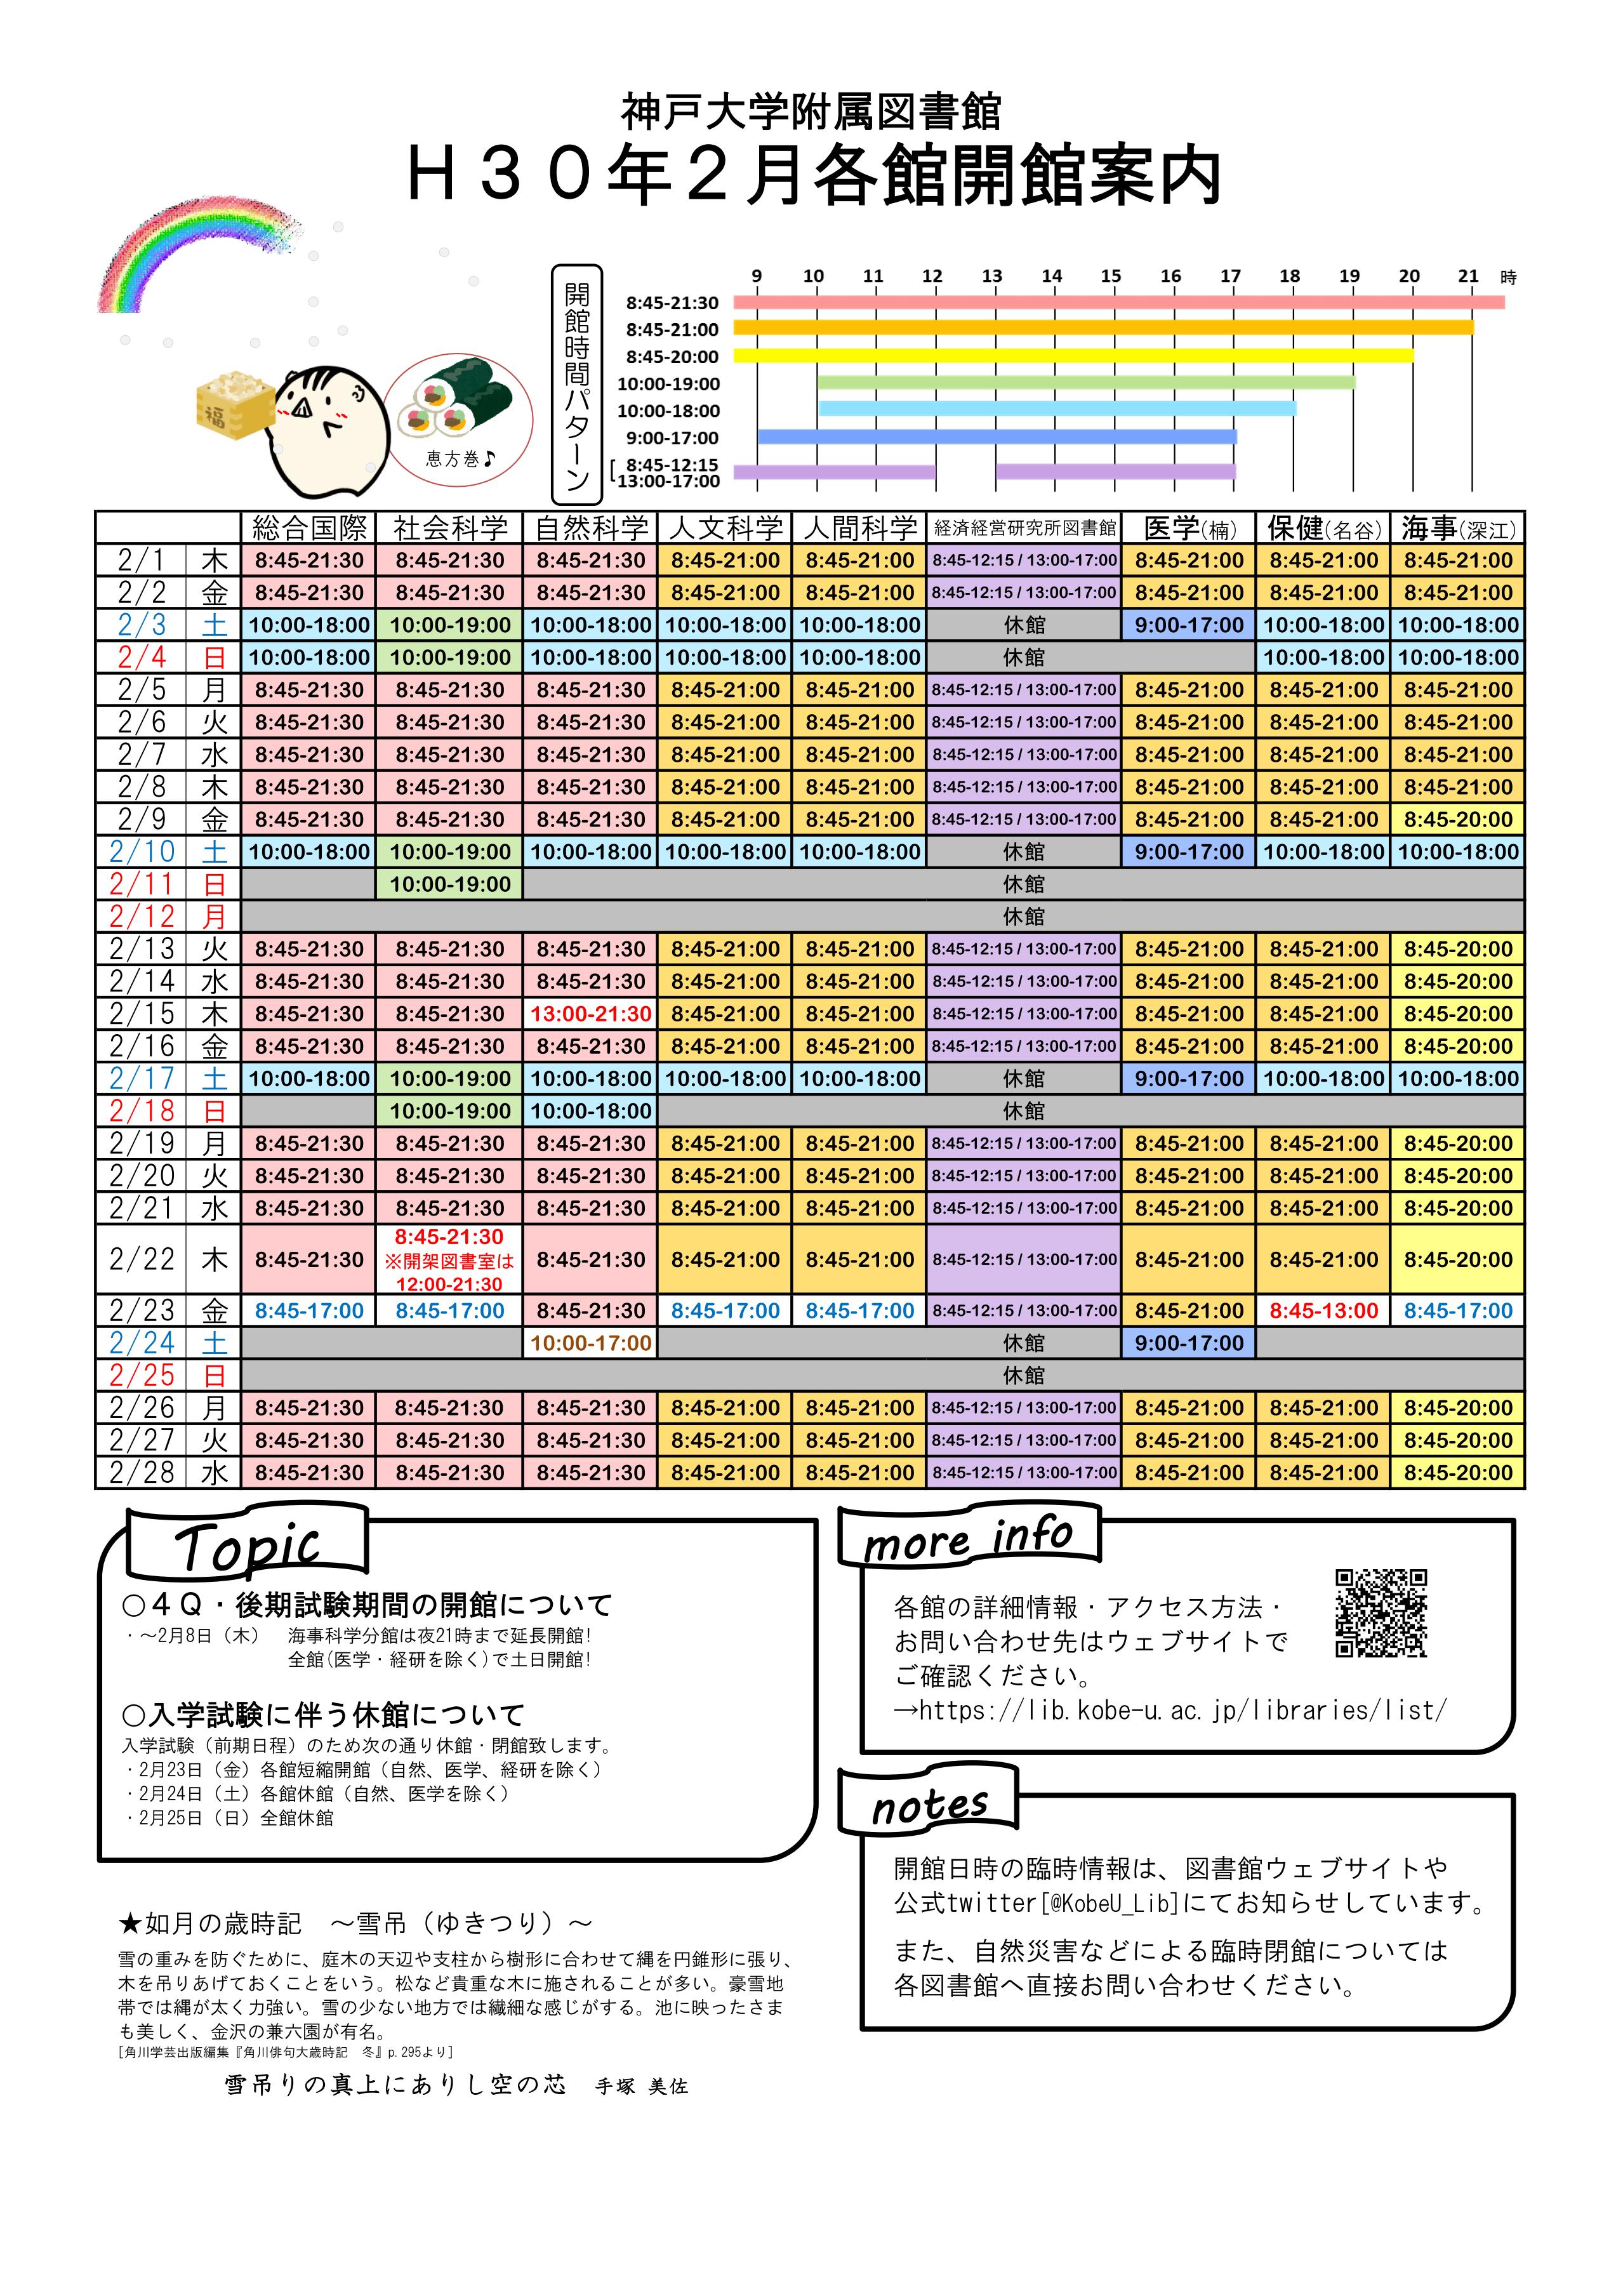 18年2月の全館開館カレンダーを作成しました 神戸大学附属図書館